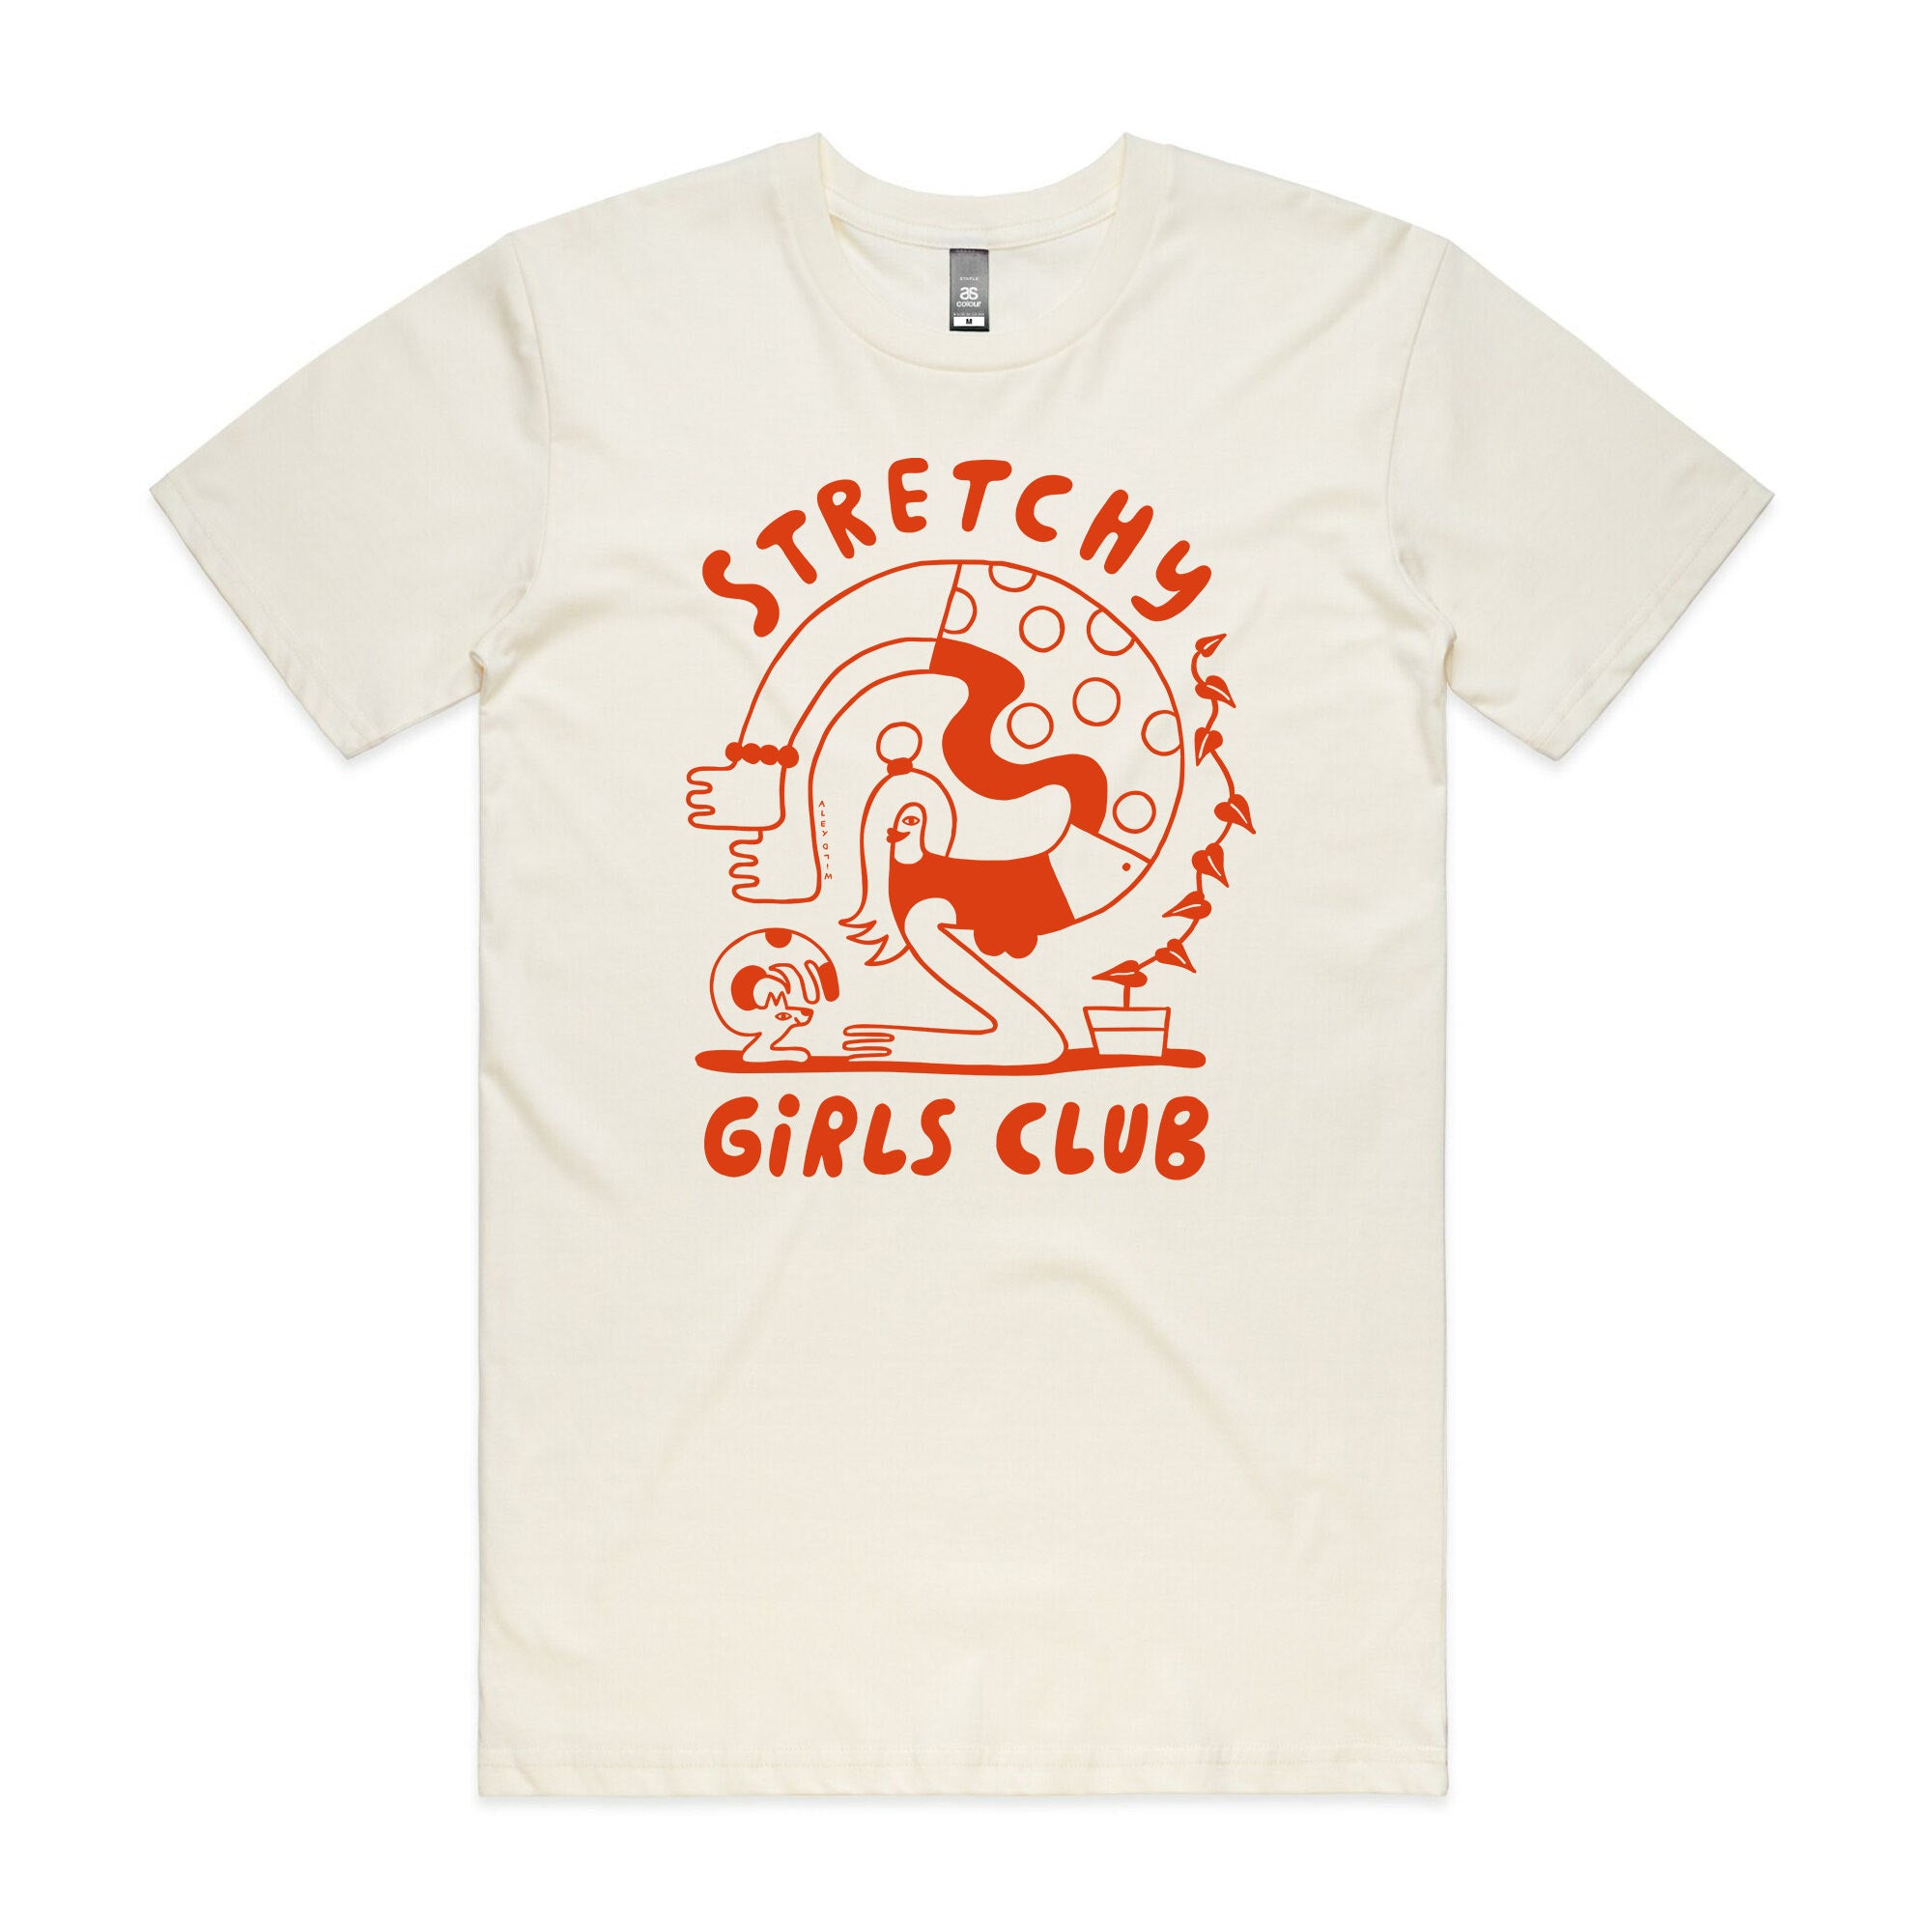 Stretchy Girls Club Tee